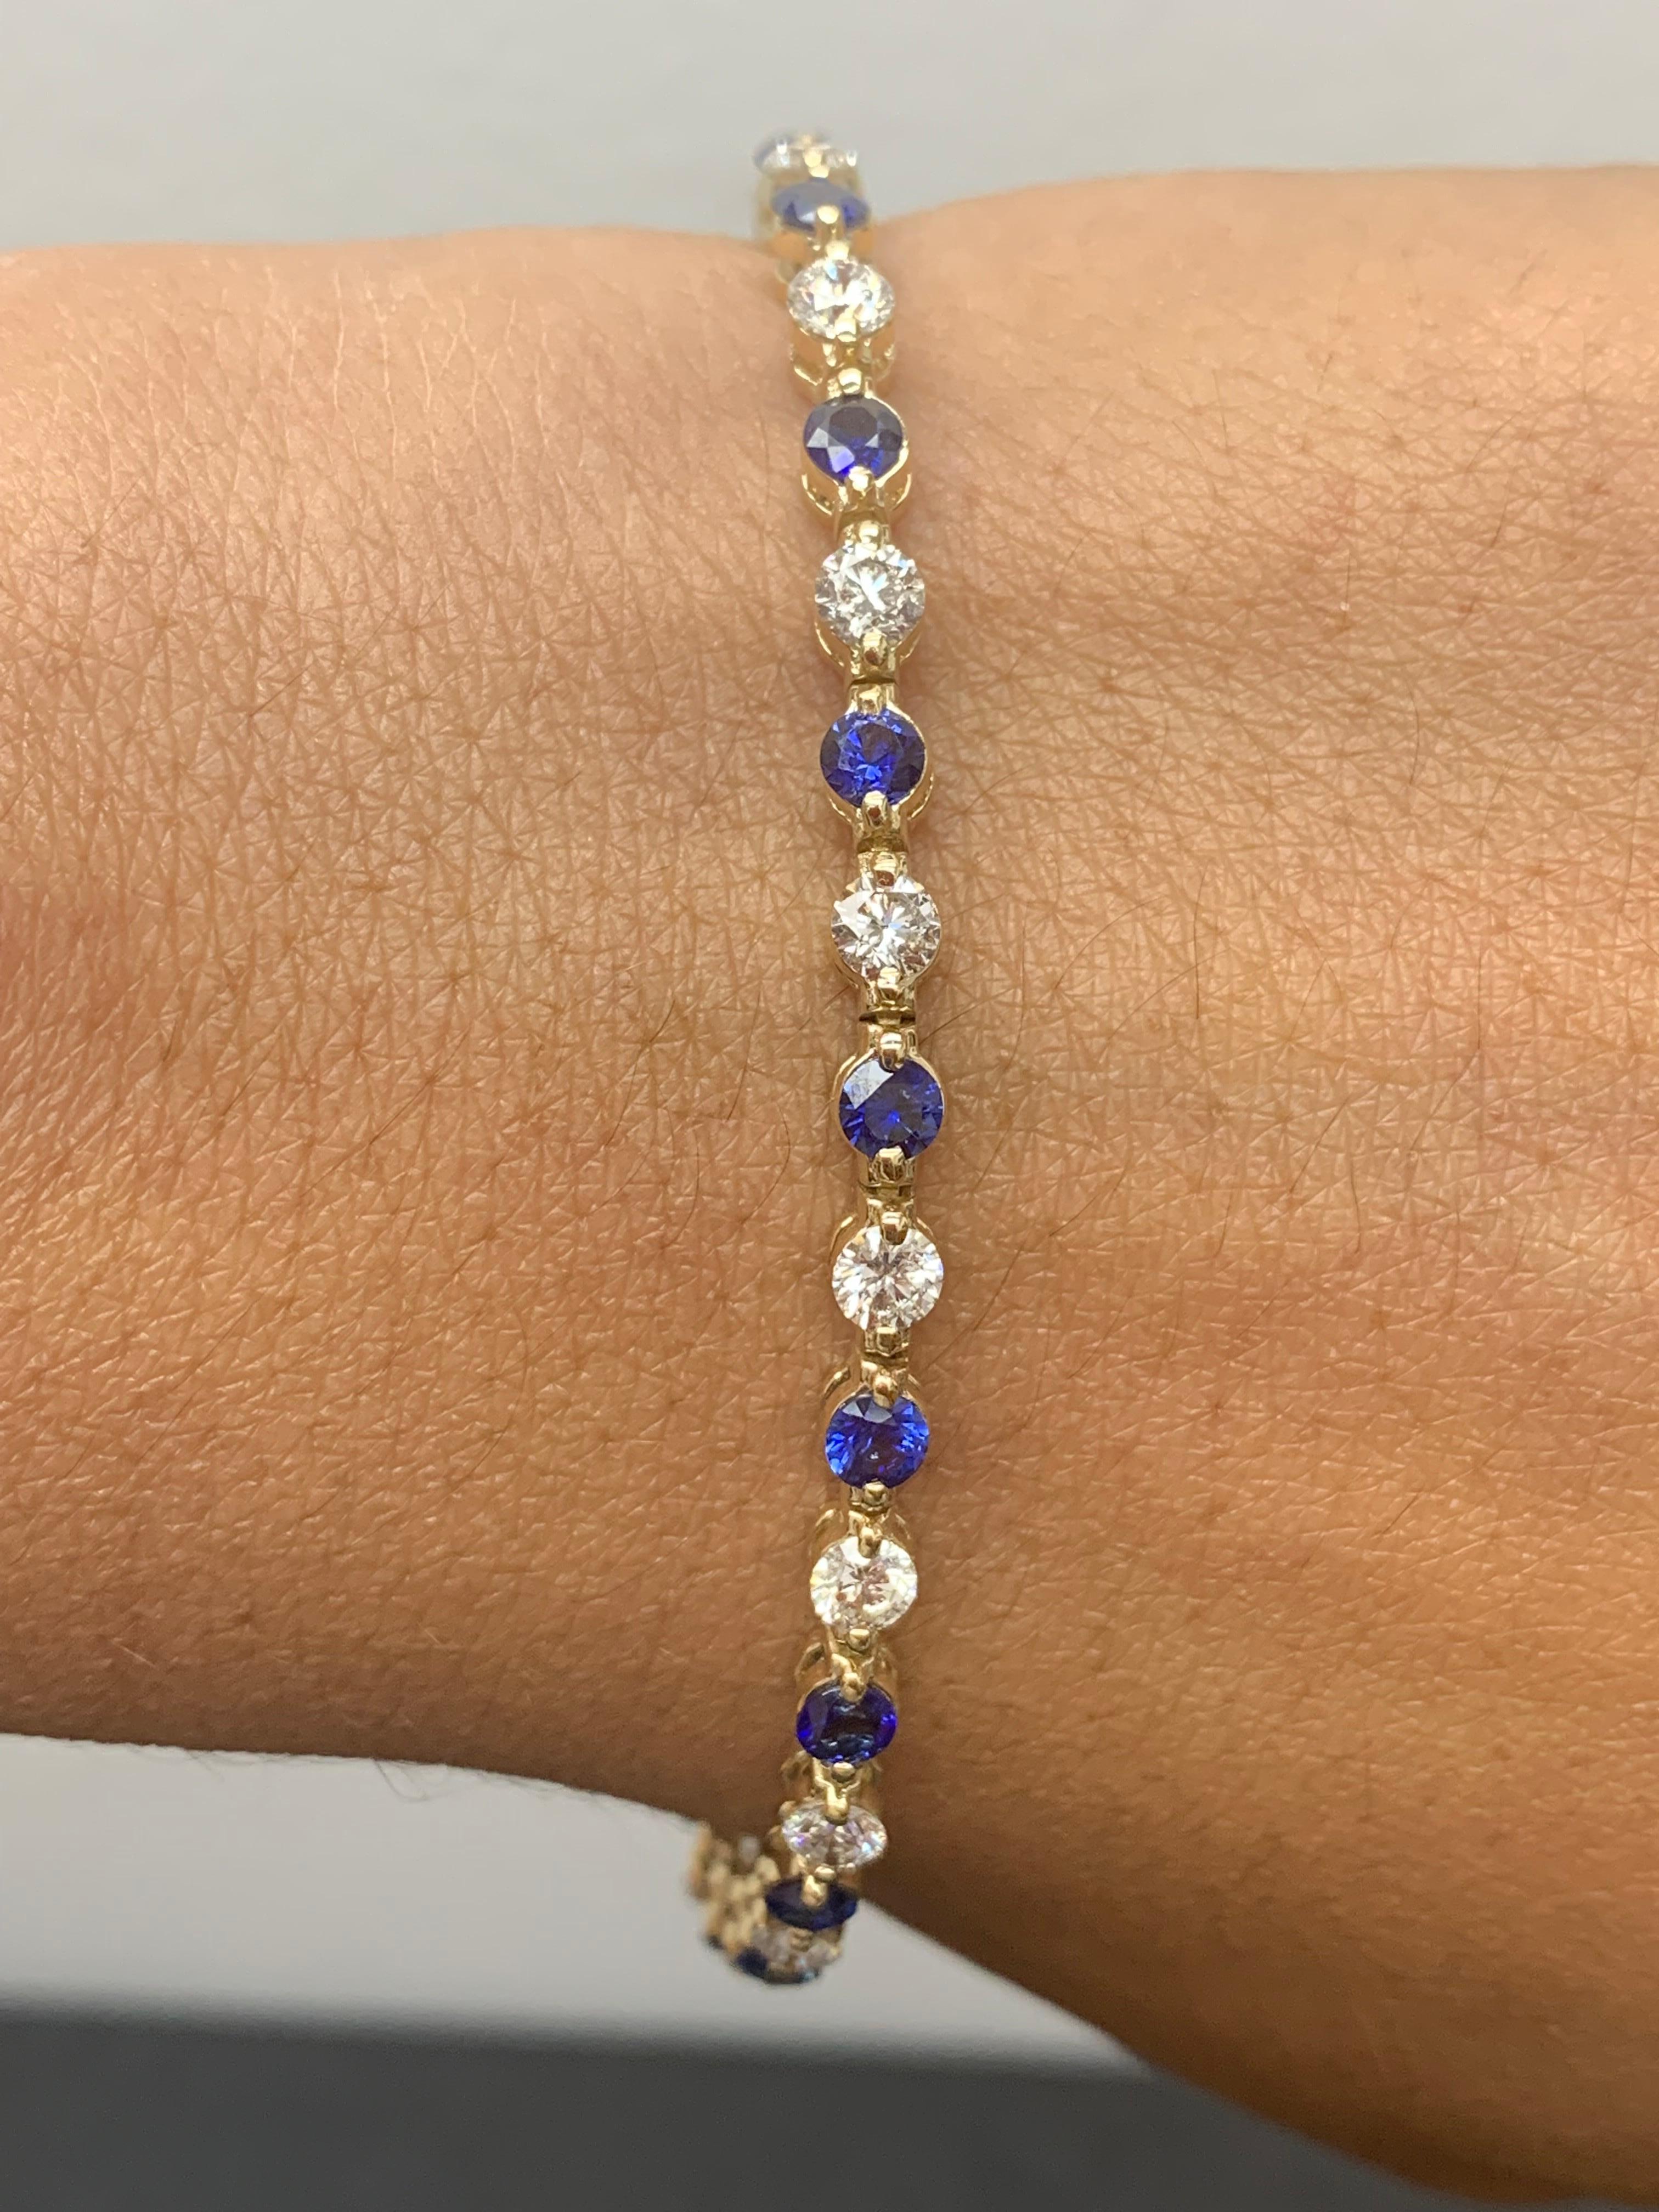 Un superbe bracelet serti de 18 saphirs bleus d'un poids total de 3,18 carats. En alternance avec ces saphirs bleus, 18 diamants ronds étincelants pèsent 2,88 carats au total. Serti en or jaune 14k poli. Double mécanisme de verrouillage pour une